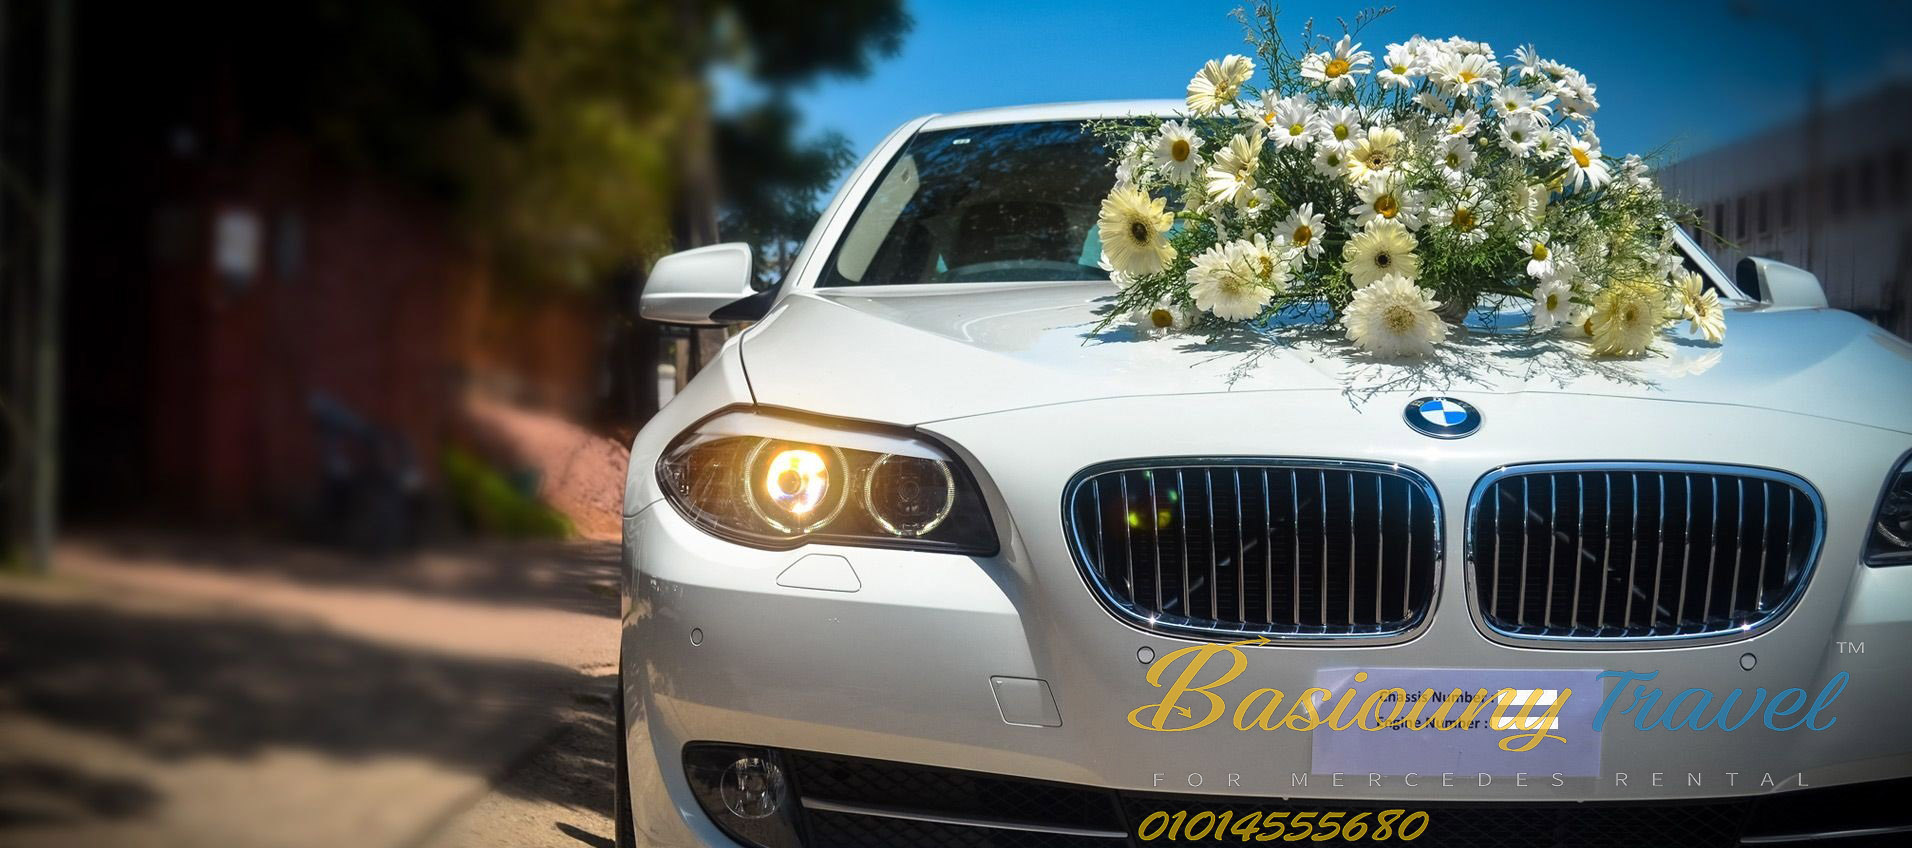 Wedding car rental prices